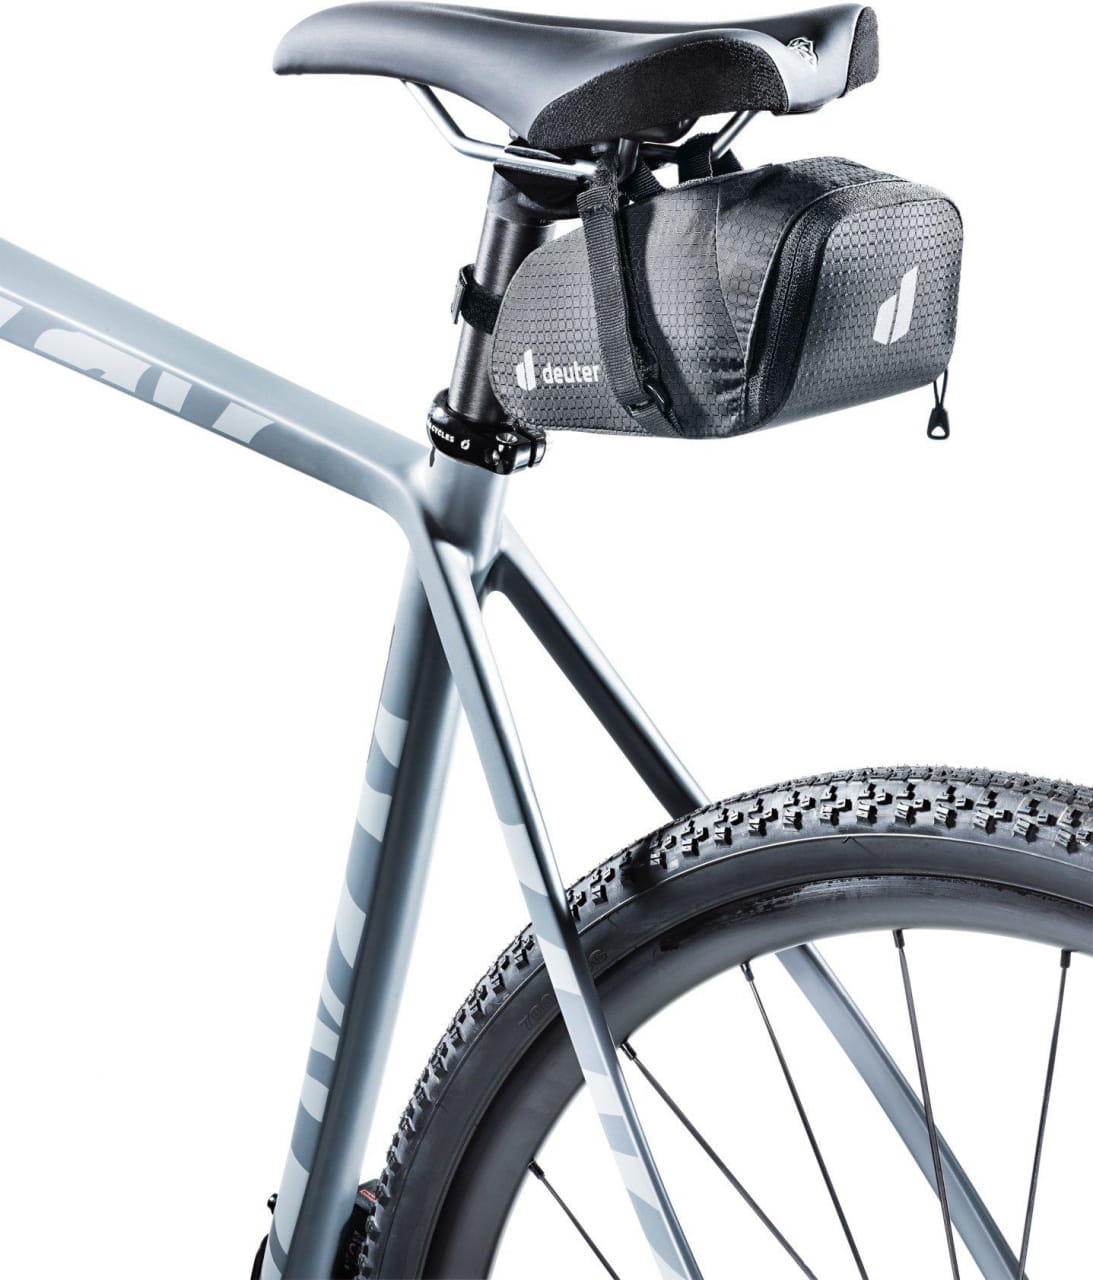 Alforja para bicicleta Deuter Bike Bag 0.8